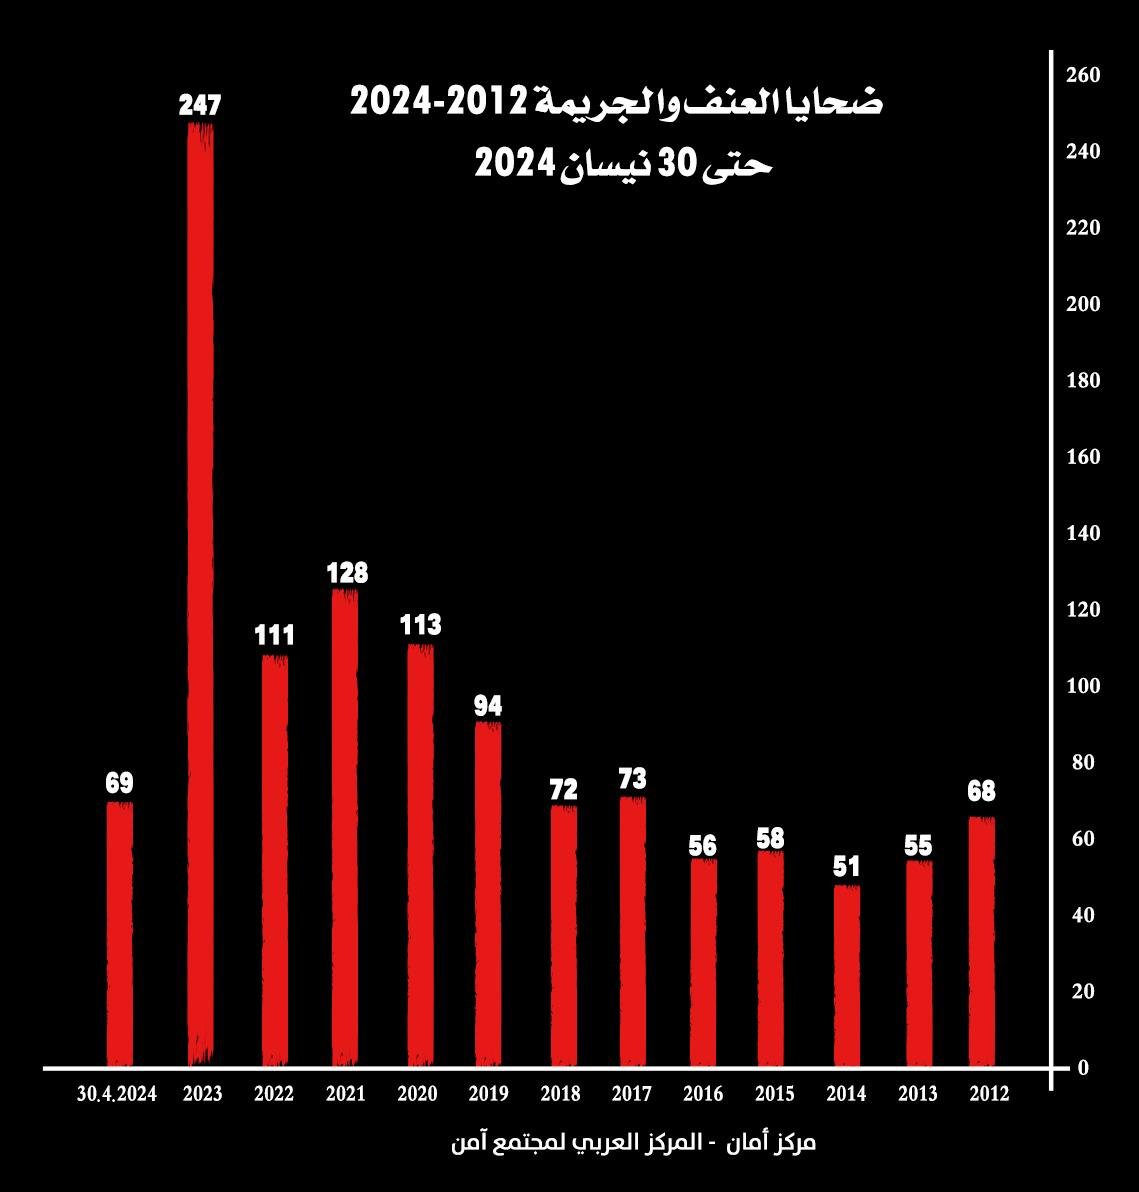 مركز أمان: الثلث الأول لعام 2024 هو الأعلى في أعداد ضحايا الجريمة والعنف في المجتمع العربي: 69 ضحية-3